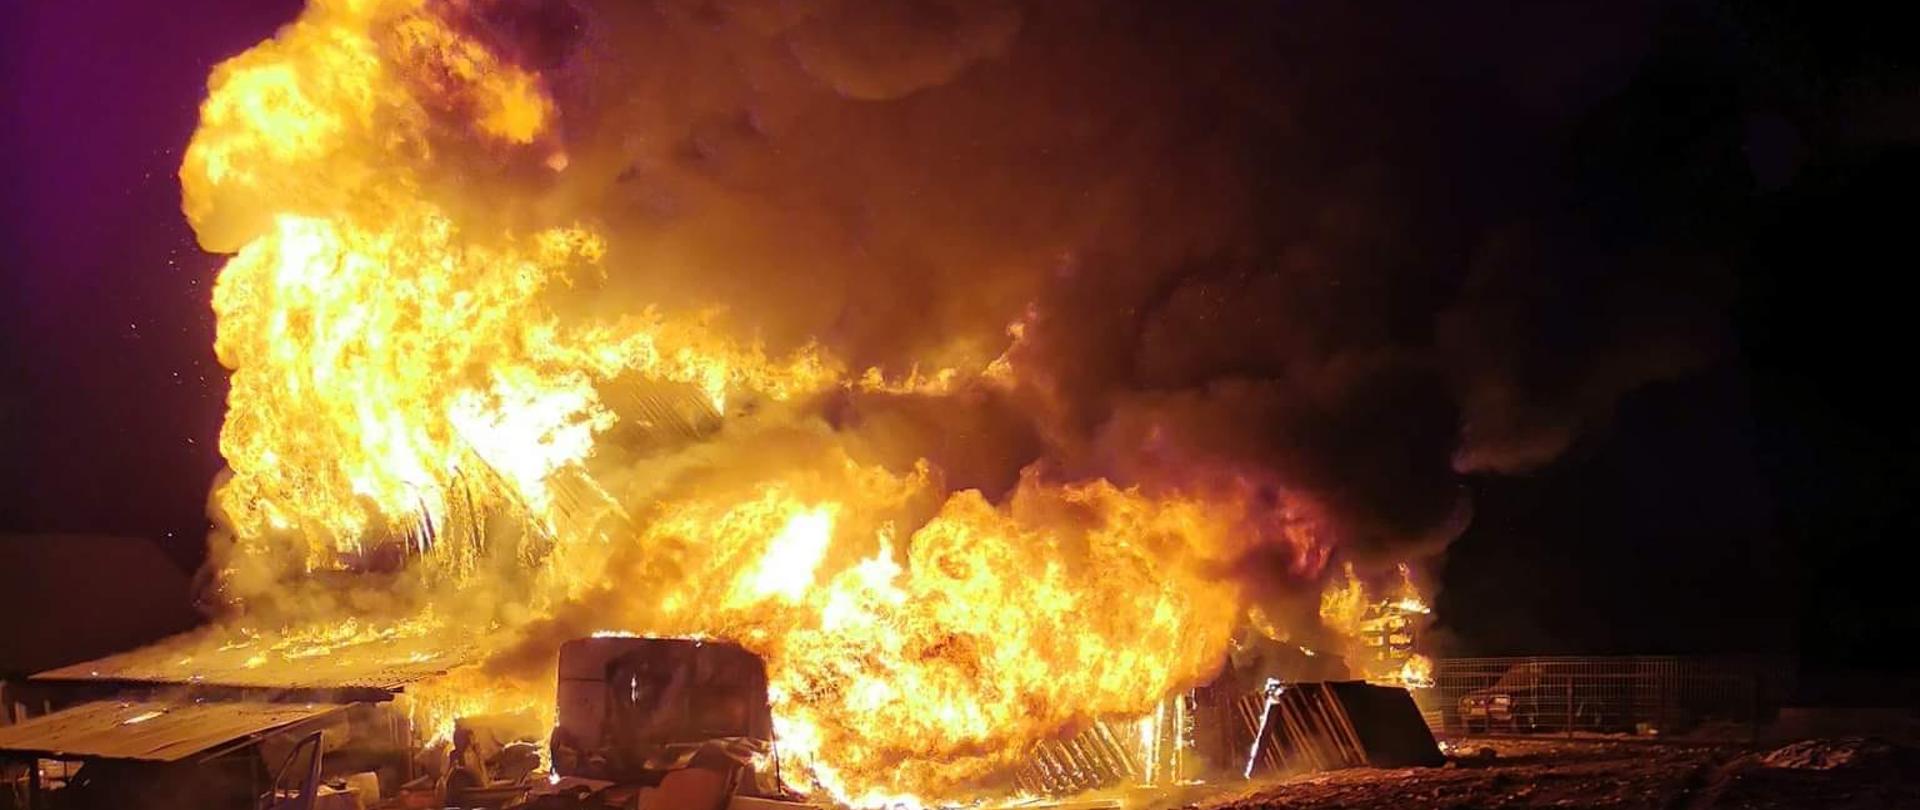 Zdjęcie przedstawia słup ognia, którym objęty jest cały budynek garażowo-warsztatowy. Zdjęcie zrobione w porze nocnej.